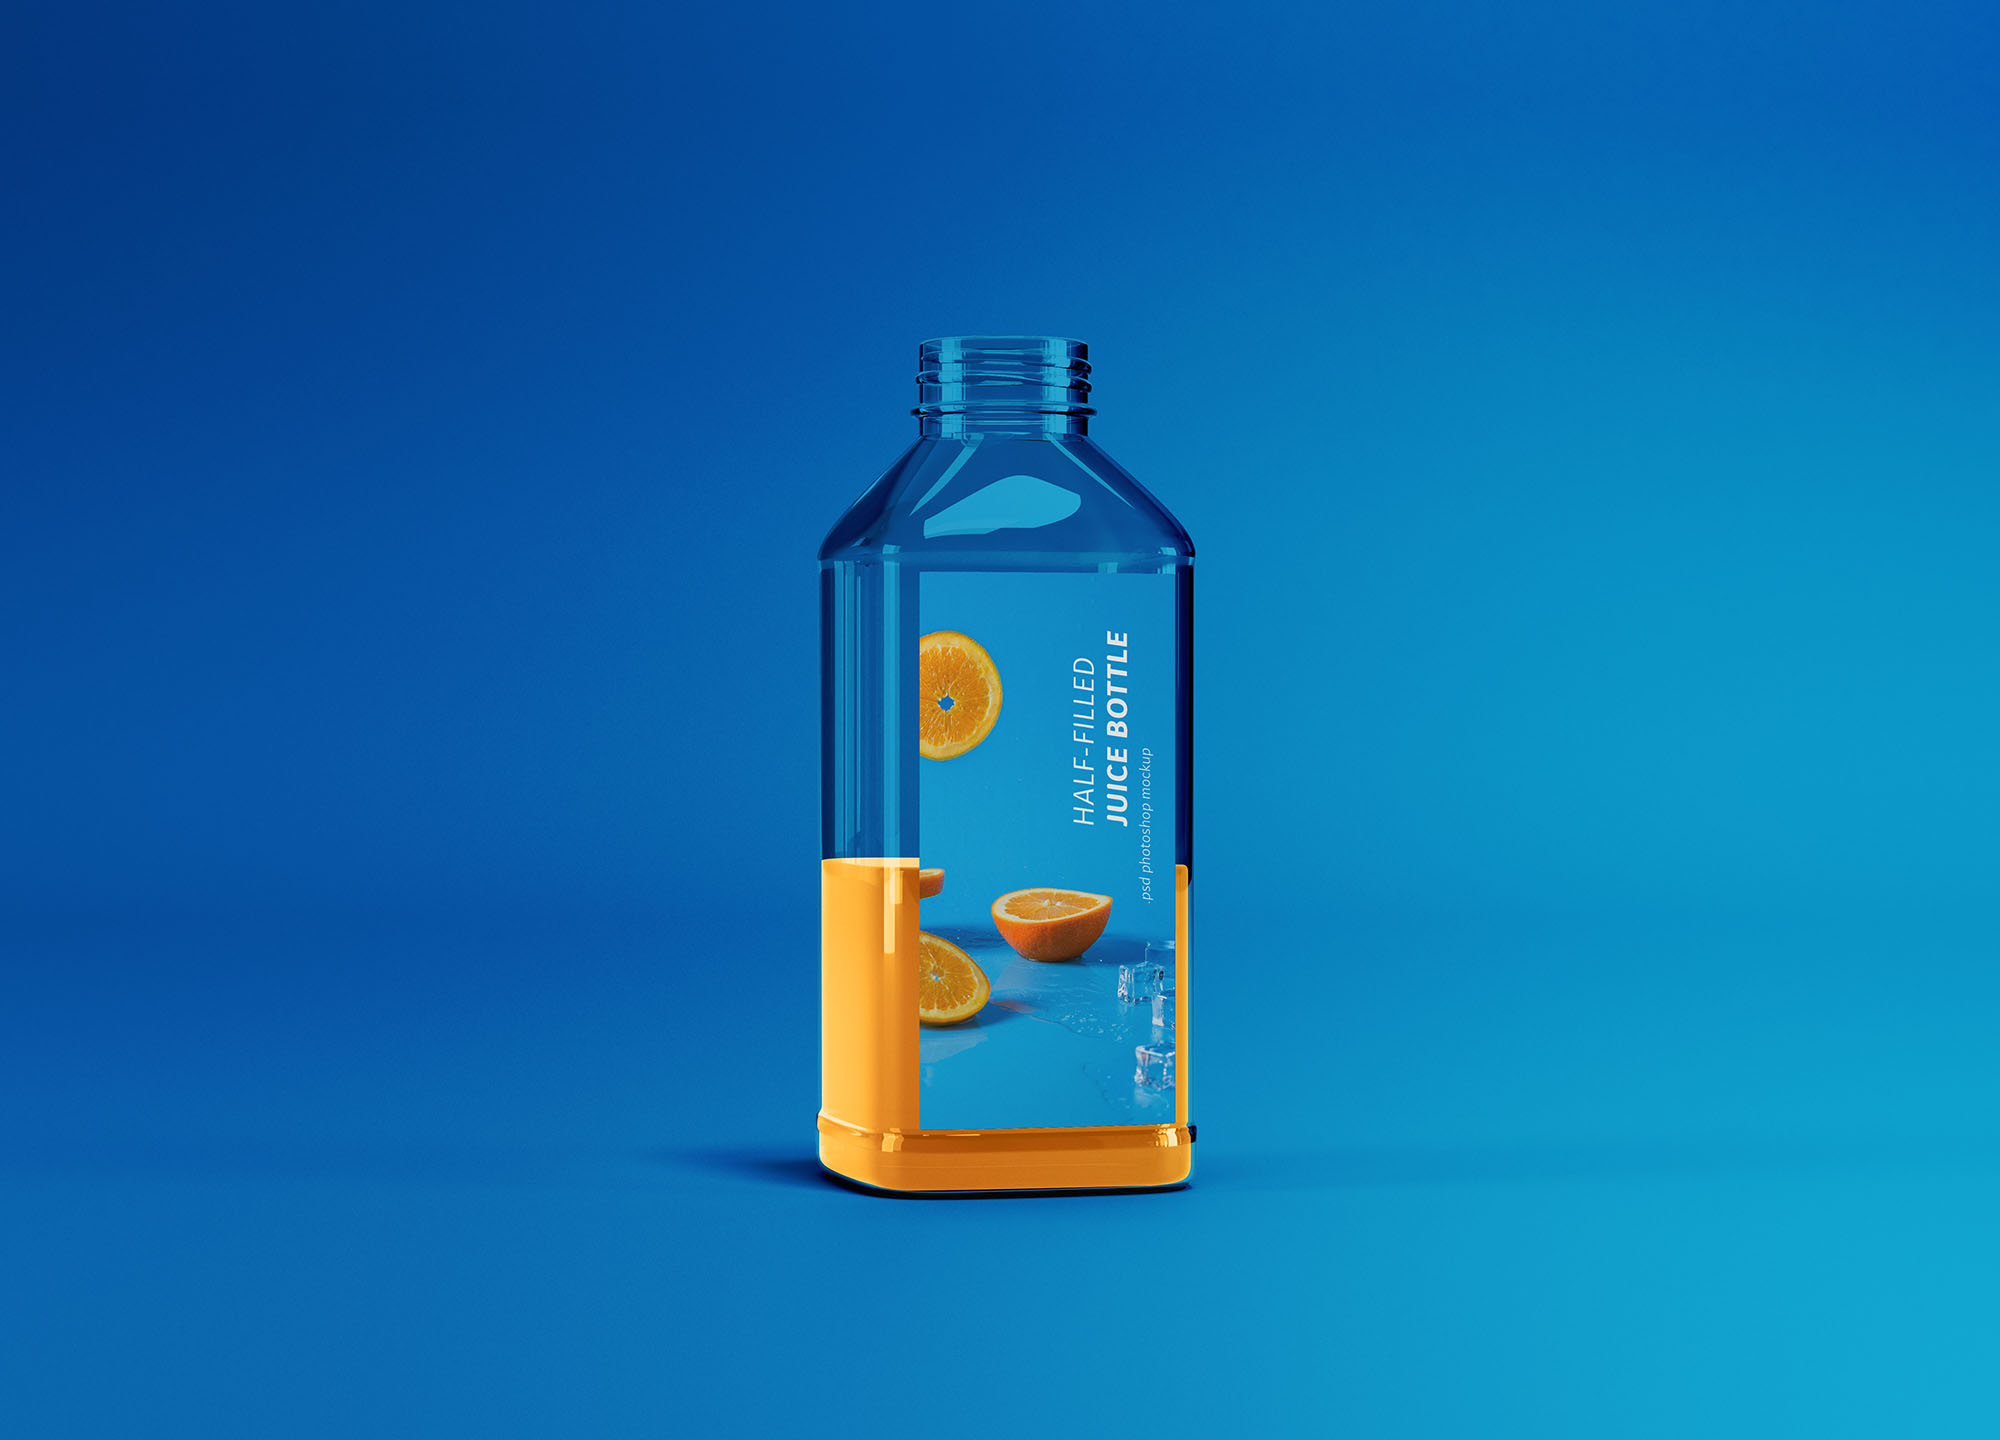 半罐透明塑料果汁瓶外观设计展示素材库精选 Half-filled Juice Bottle Mockup插图